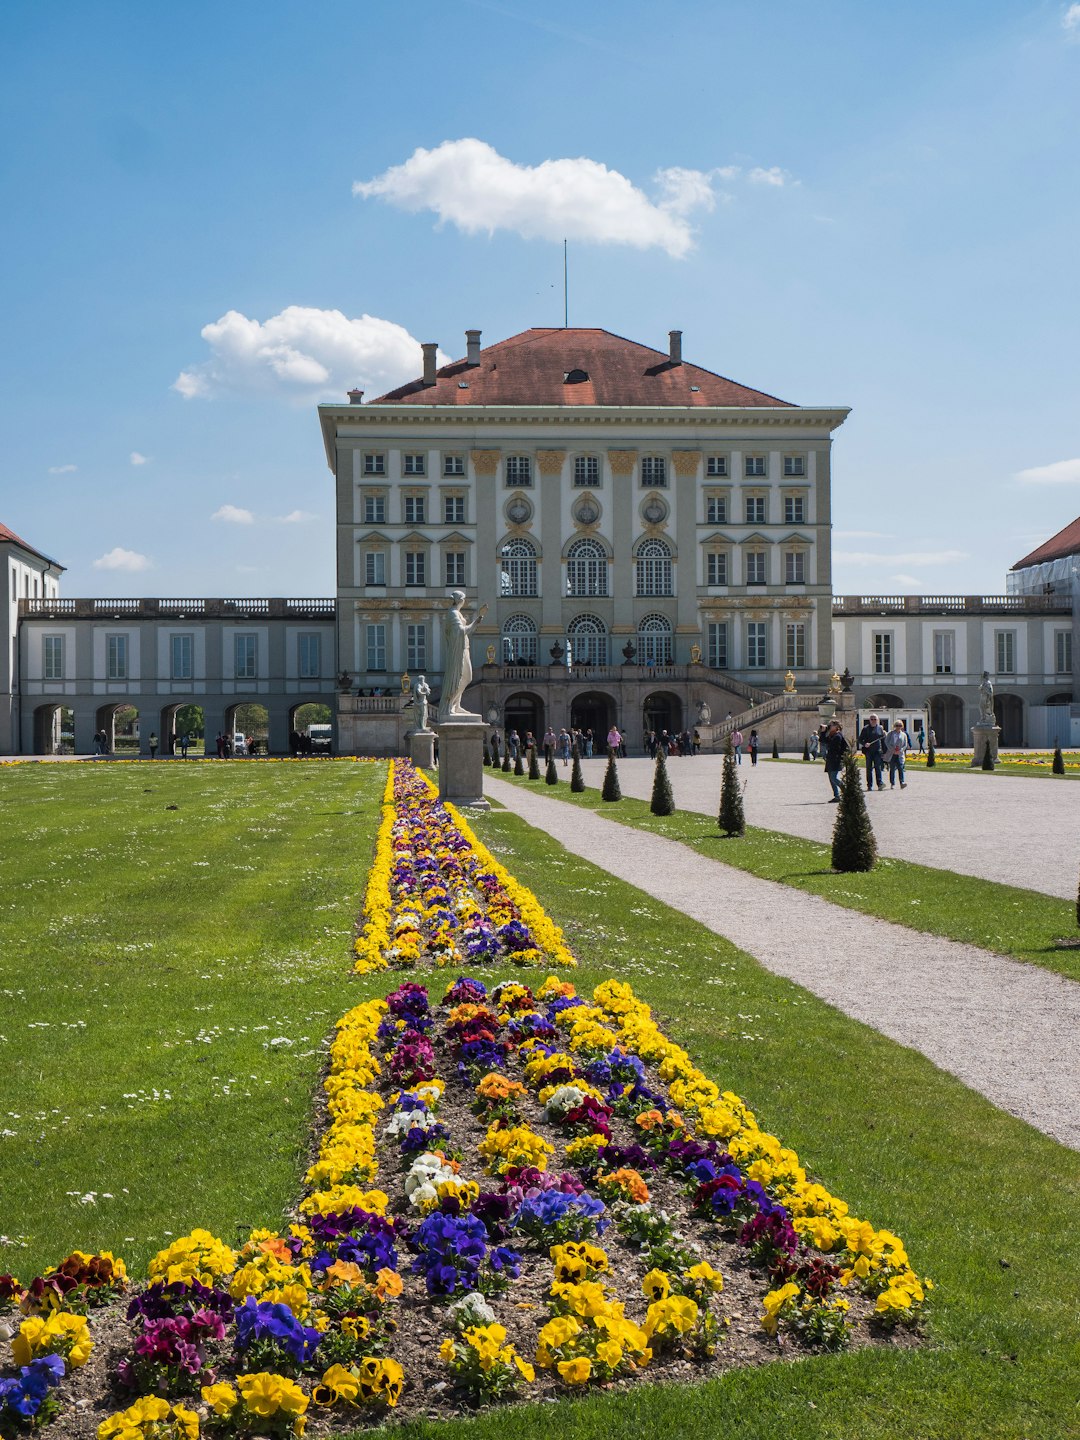 Landmark photo spot Nymphenburg Palace Marienplatz